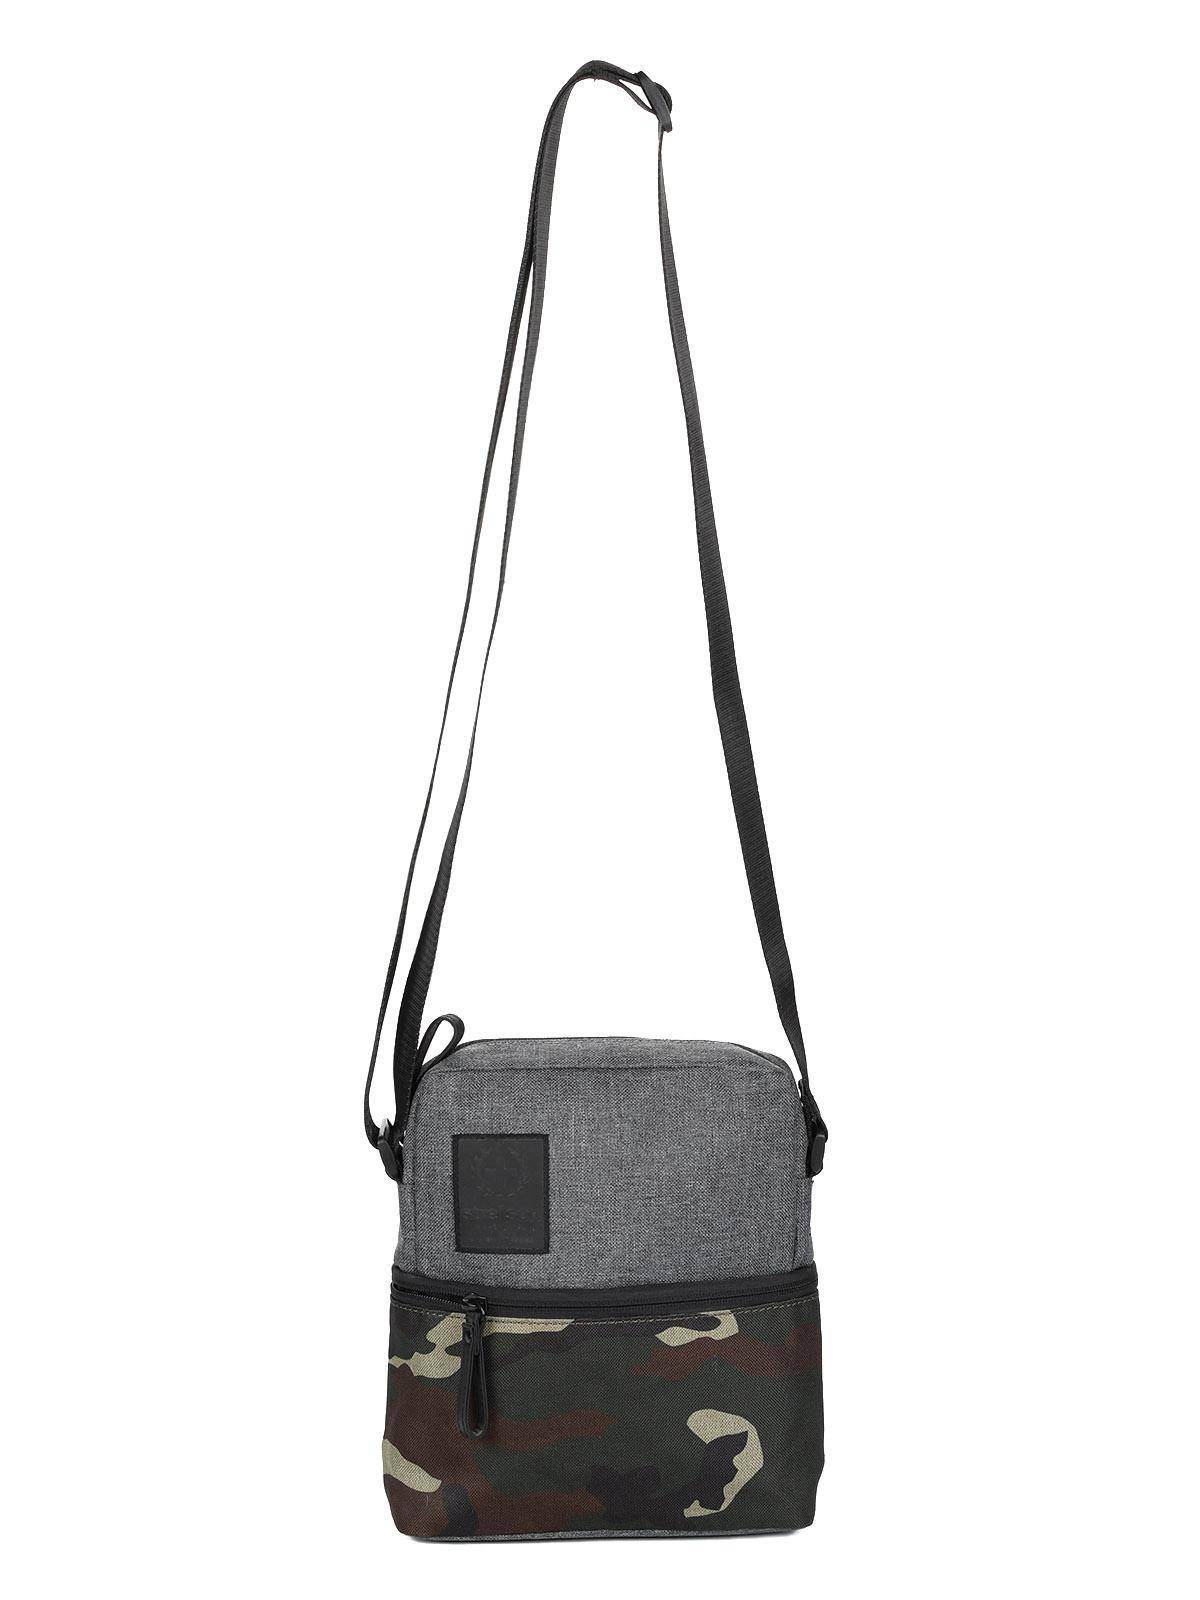 Городская сумка Strellson Bags Swiss cross 2 shoulderbag xsvz 4010002437, цвет серый, размер ONE SIZE - фото 1